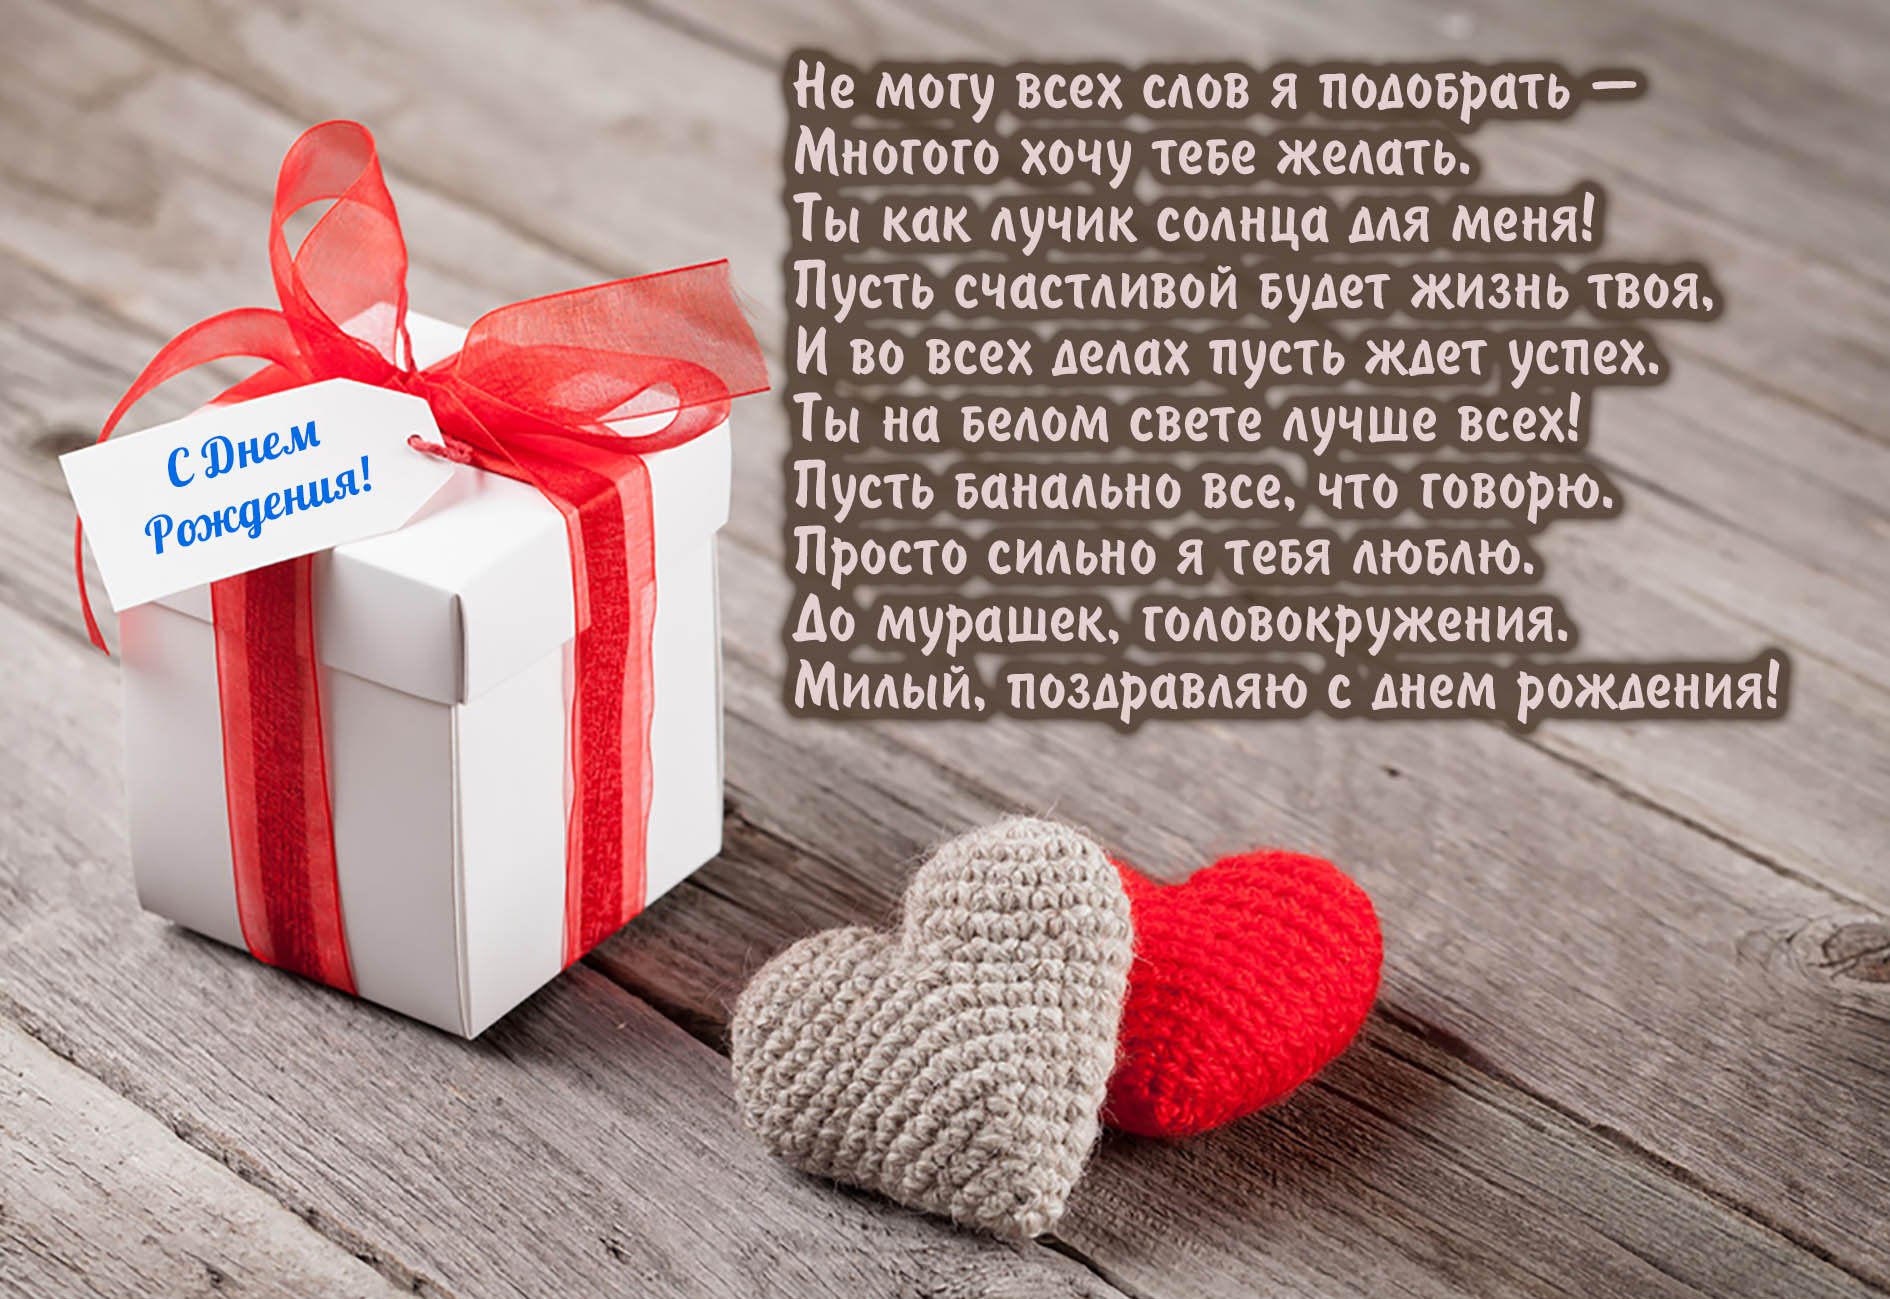 Поздравления с Днем рождения парню в стихах и прозе - Новости на zelgrumer.ru